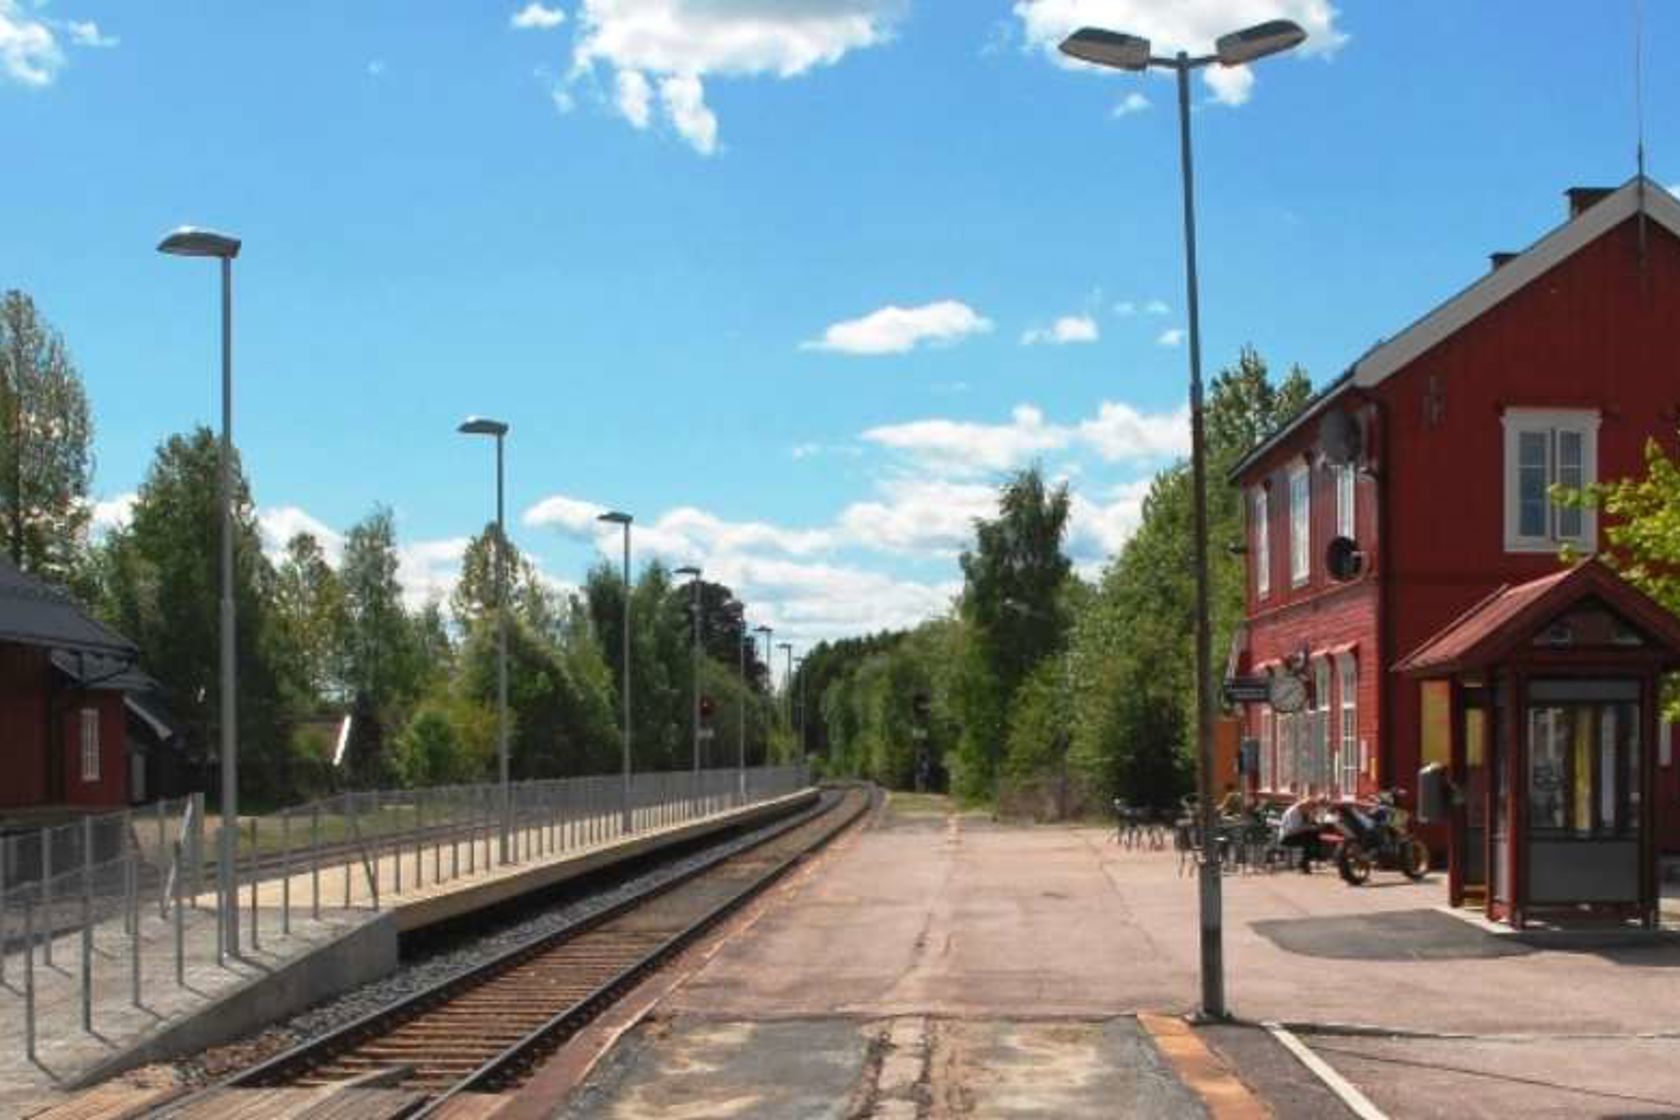 Exterior view of Løten station